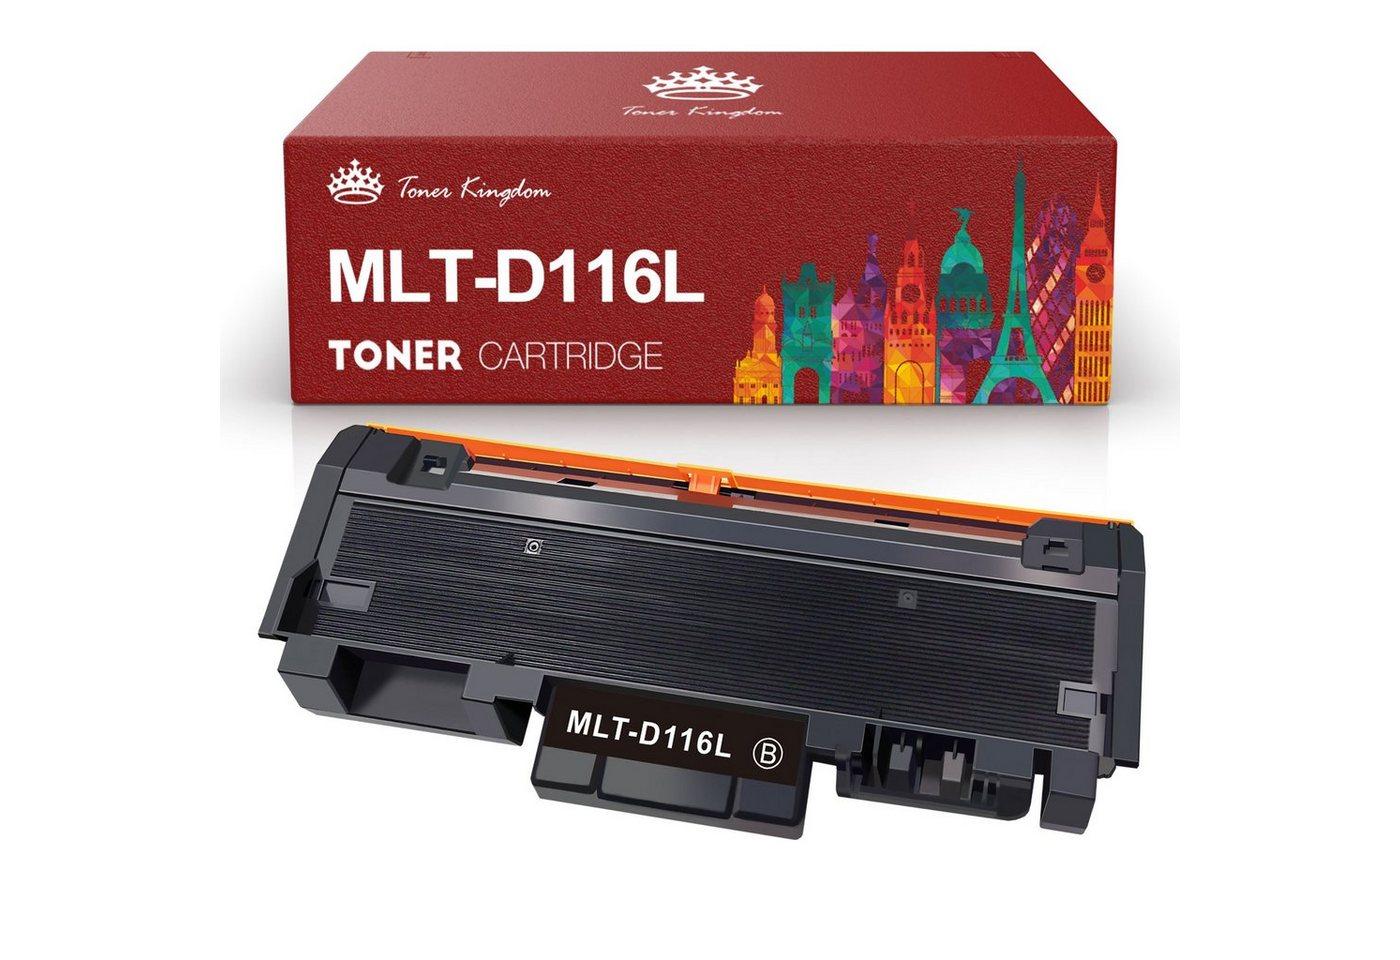 Toner Kingdom Tonerpatrone für SAMSUNG MLT-D116L MLT-D116S 116L MLT116